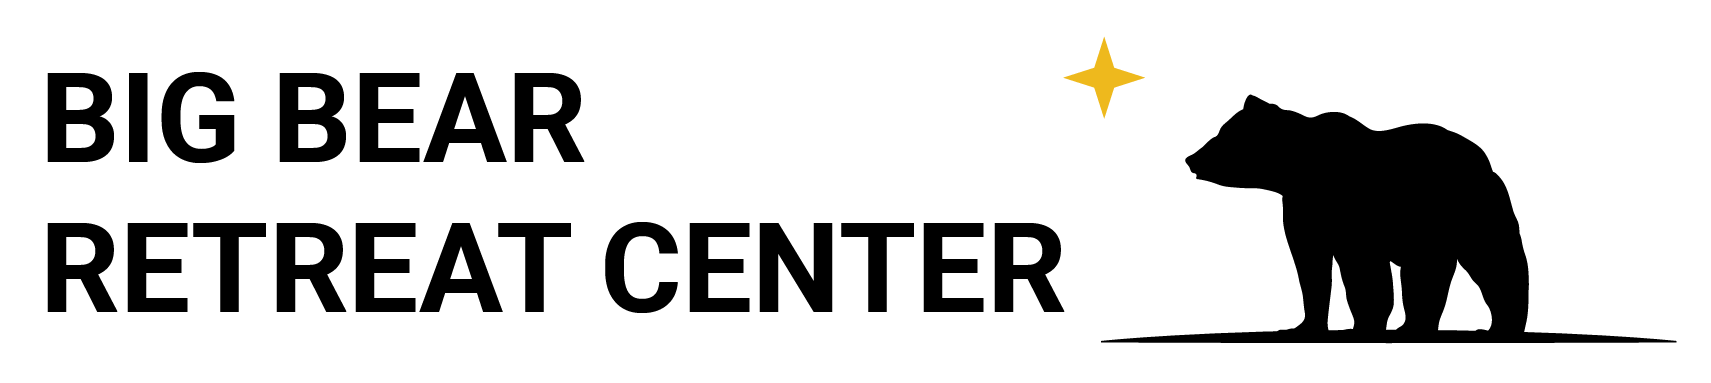 Big Bear Retreat Center logo